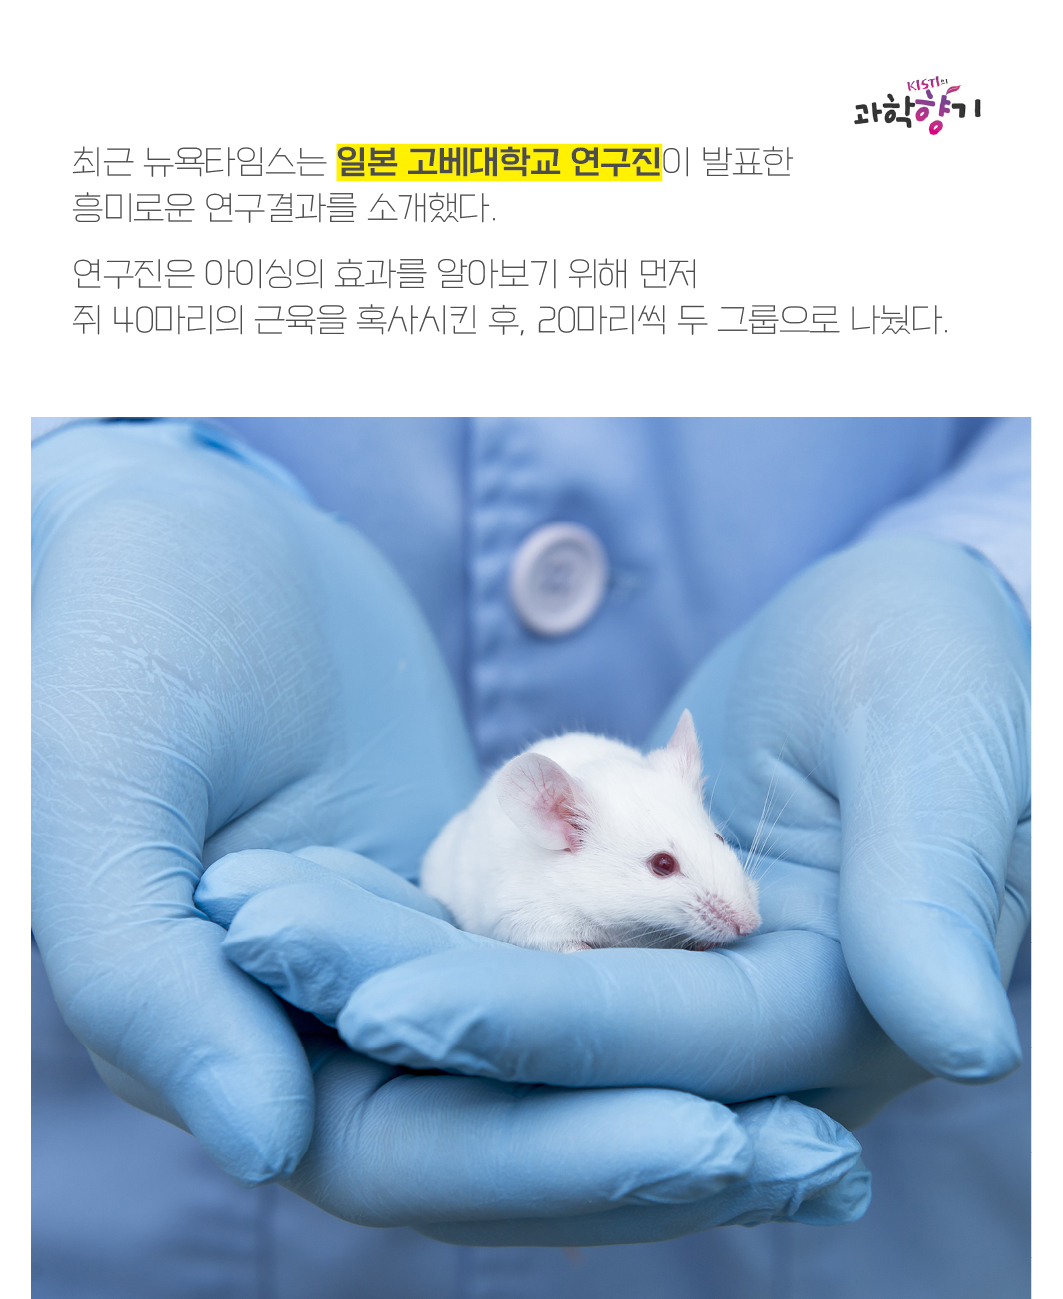 최근 뉴욕타임스는 일본 고베대학교 연구진이 발표한 흥미로운 연구결과를 소개했다.   연구진은 아이싱의 효과를 알아보기 위해 먼저 쥐 40마리의 근육을 혹사시킨 후, 20마리씩 두 그룹으로 나눴다.